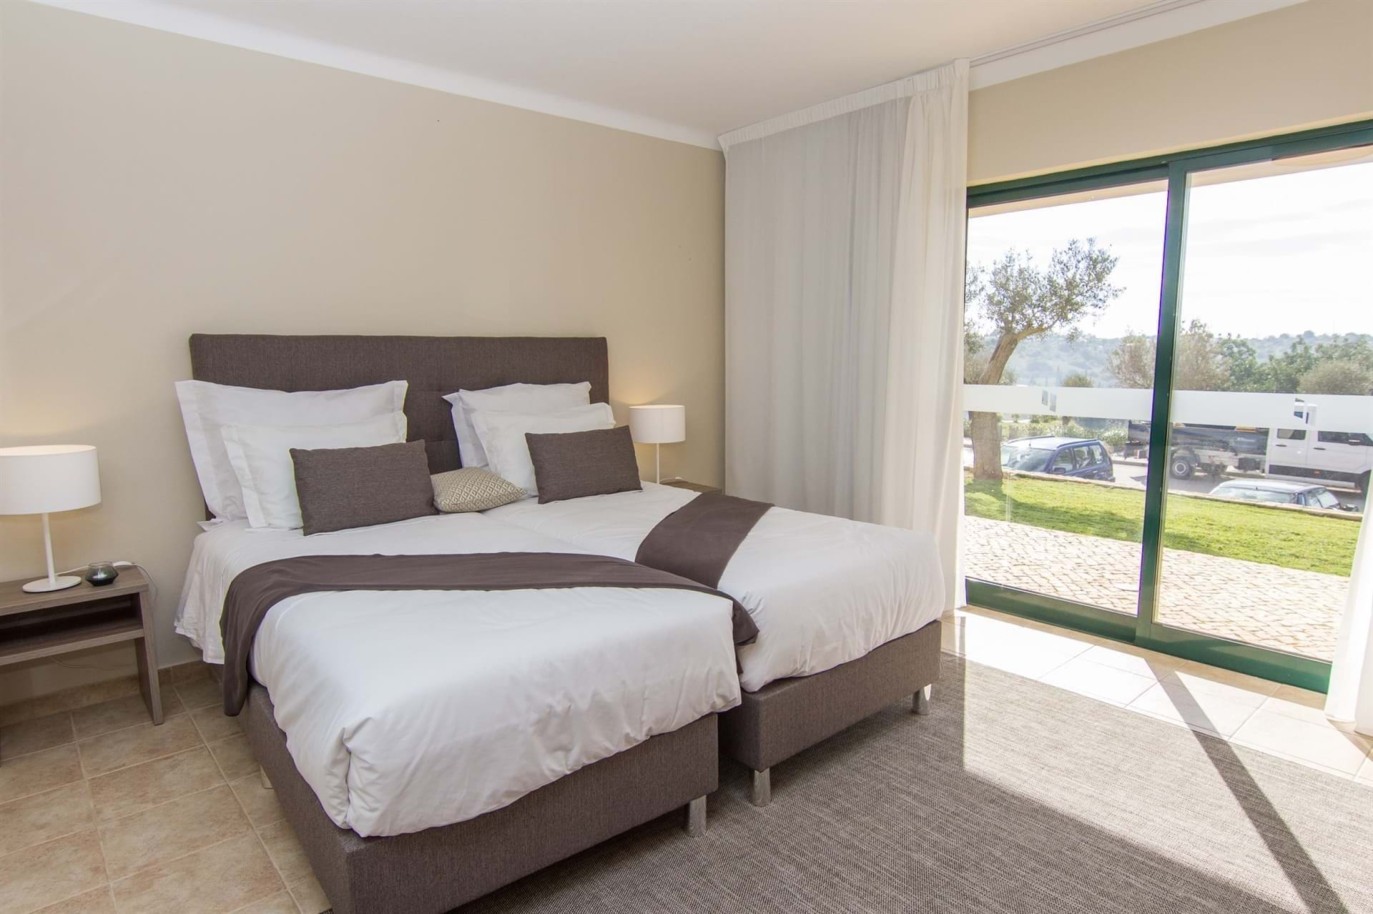 Venta de apartamento nuevo en el Carvoeiro, Algarve, Portugal_215621